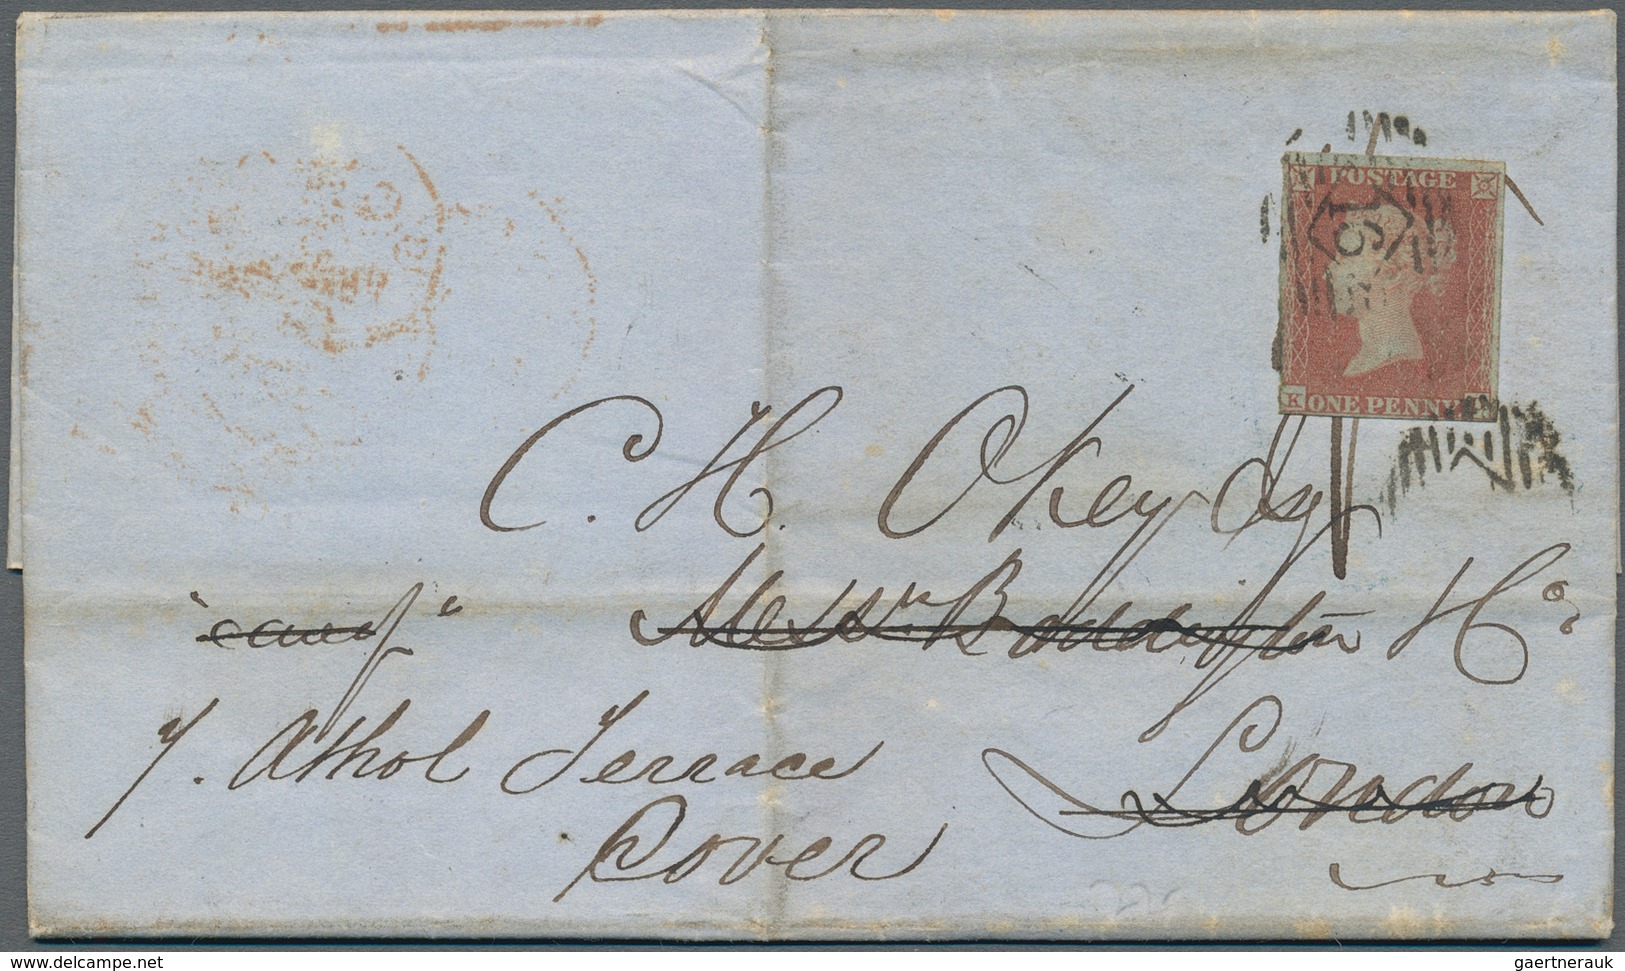 Antigua: 1851, Complete Entire Letter Sent From "ANTIQUA DE 16 1851" To London With Arrival 8.1.52, - Antigua Und Barbuda (1981-...)